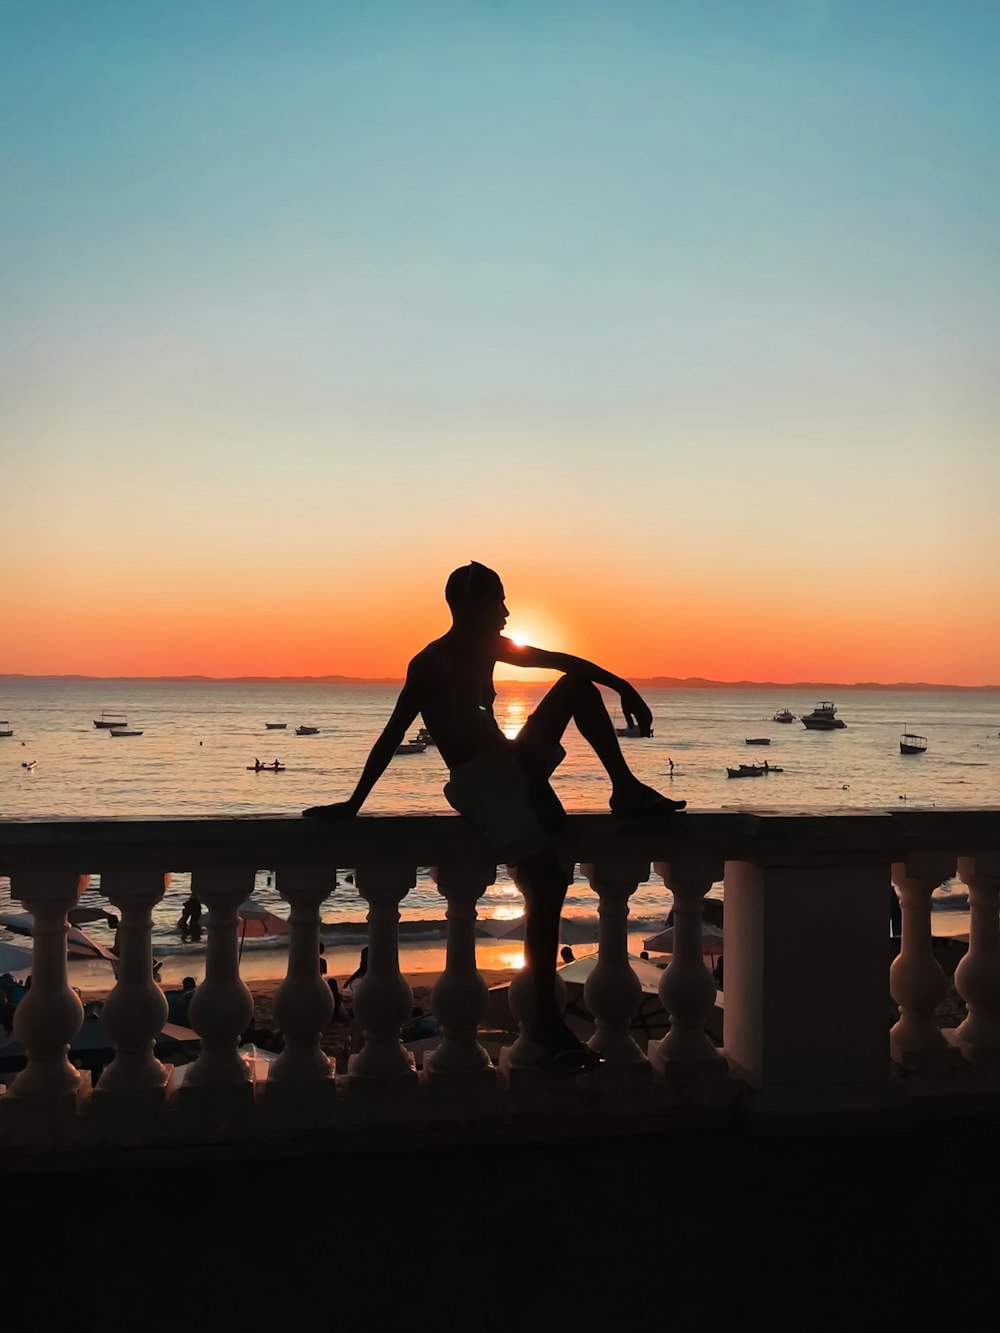 Eine Person, die auf einer Bank sitzt und den Sonnenuntergang betrachtet